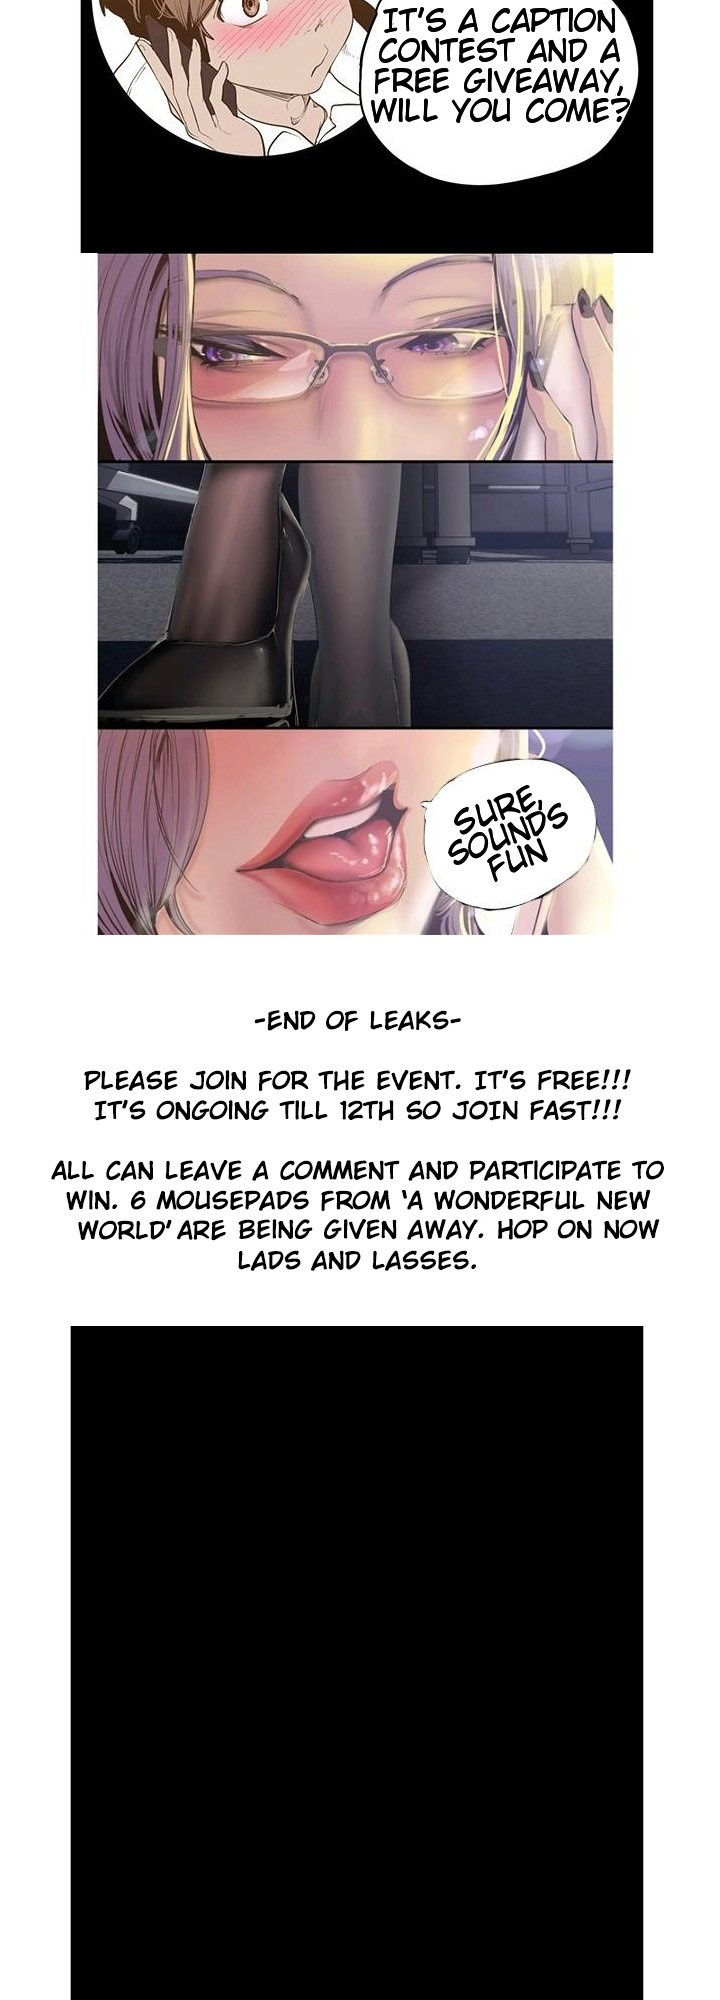 A Wonderful New World - Page 3